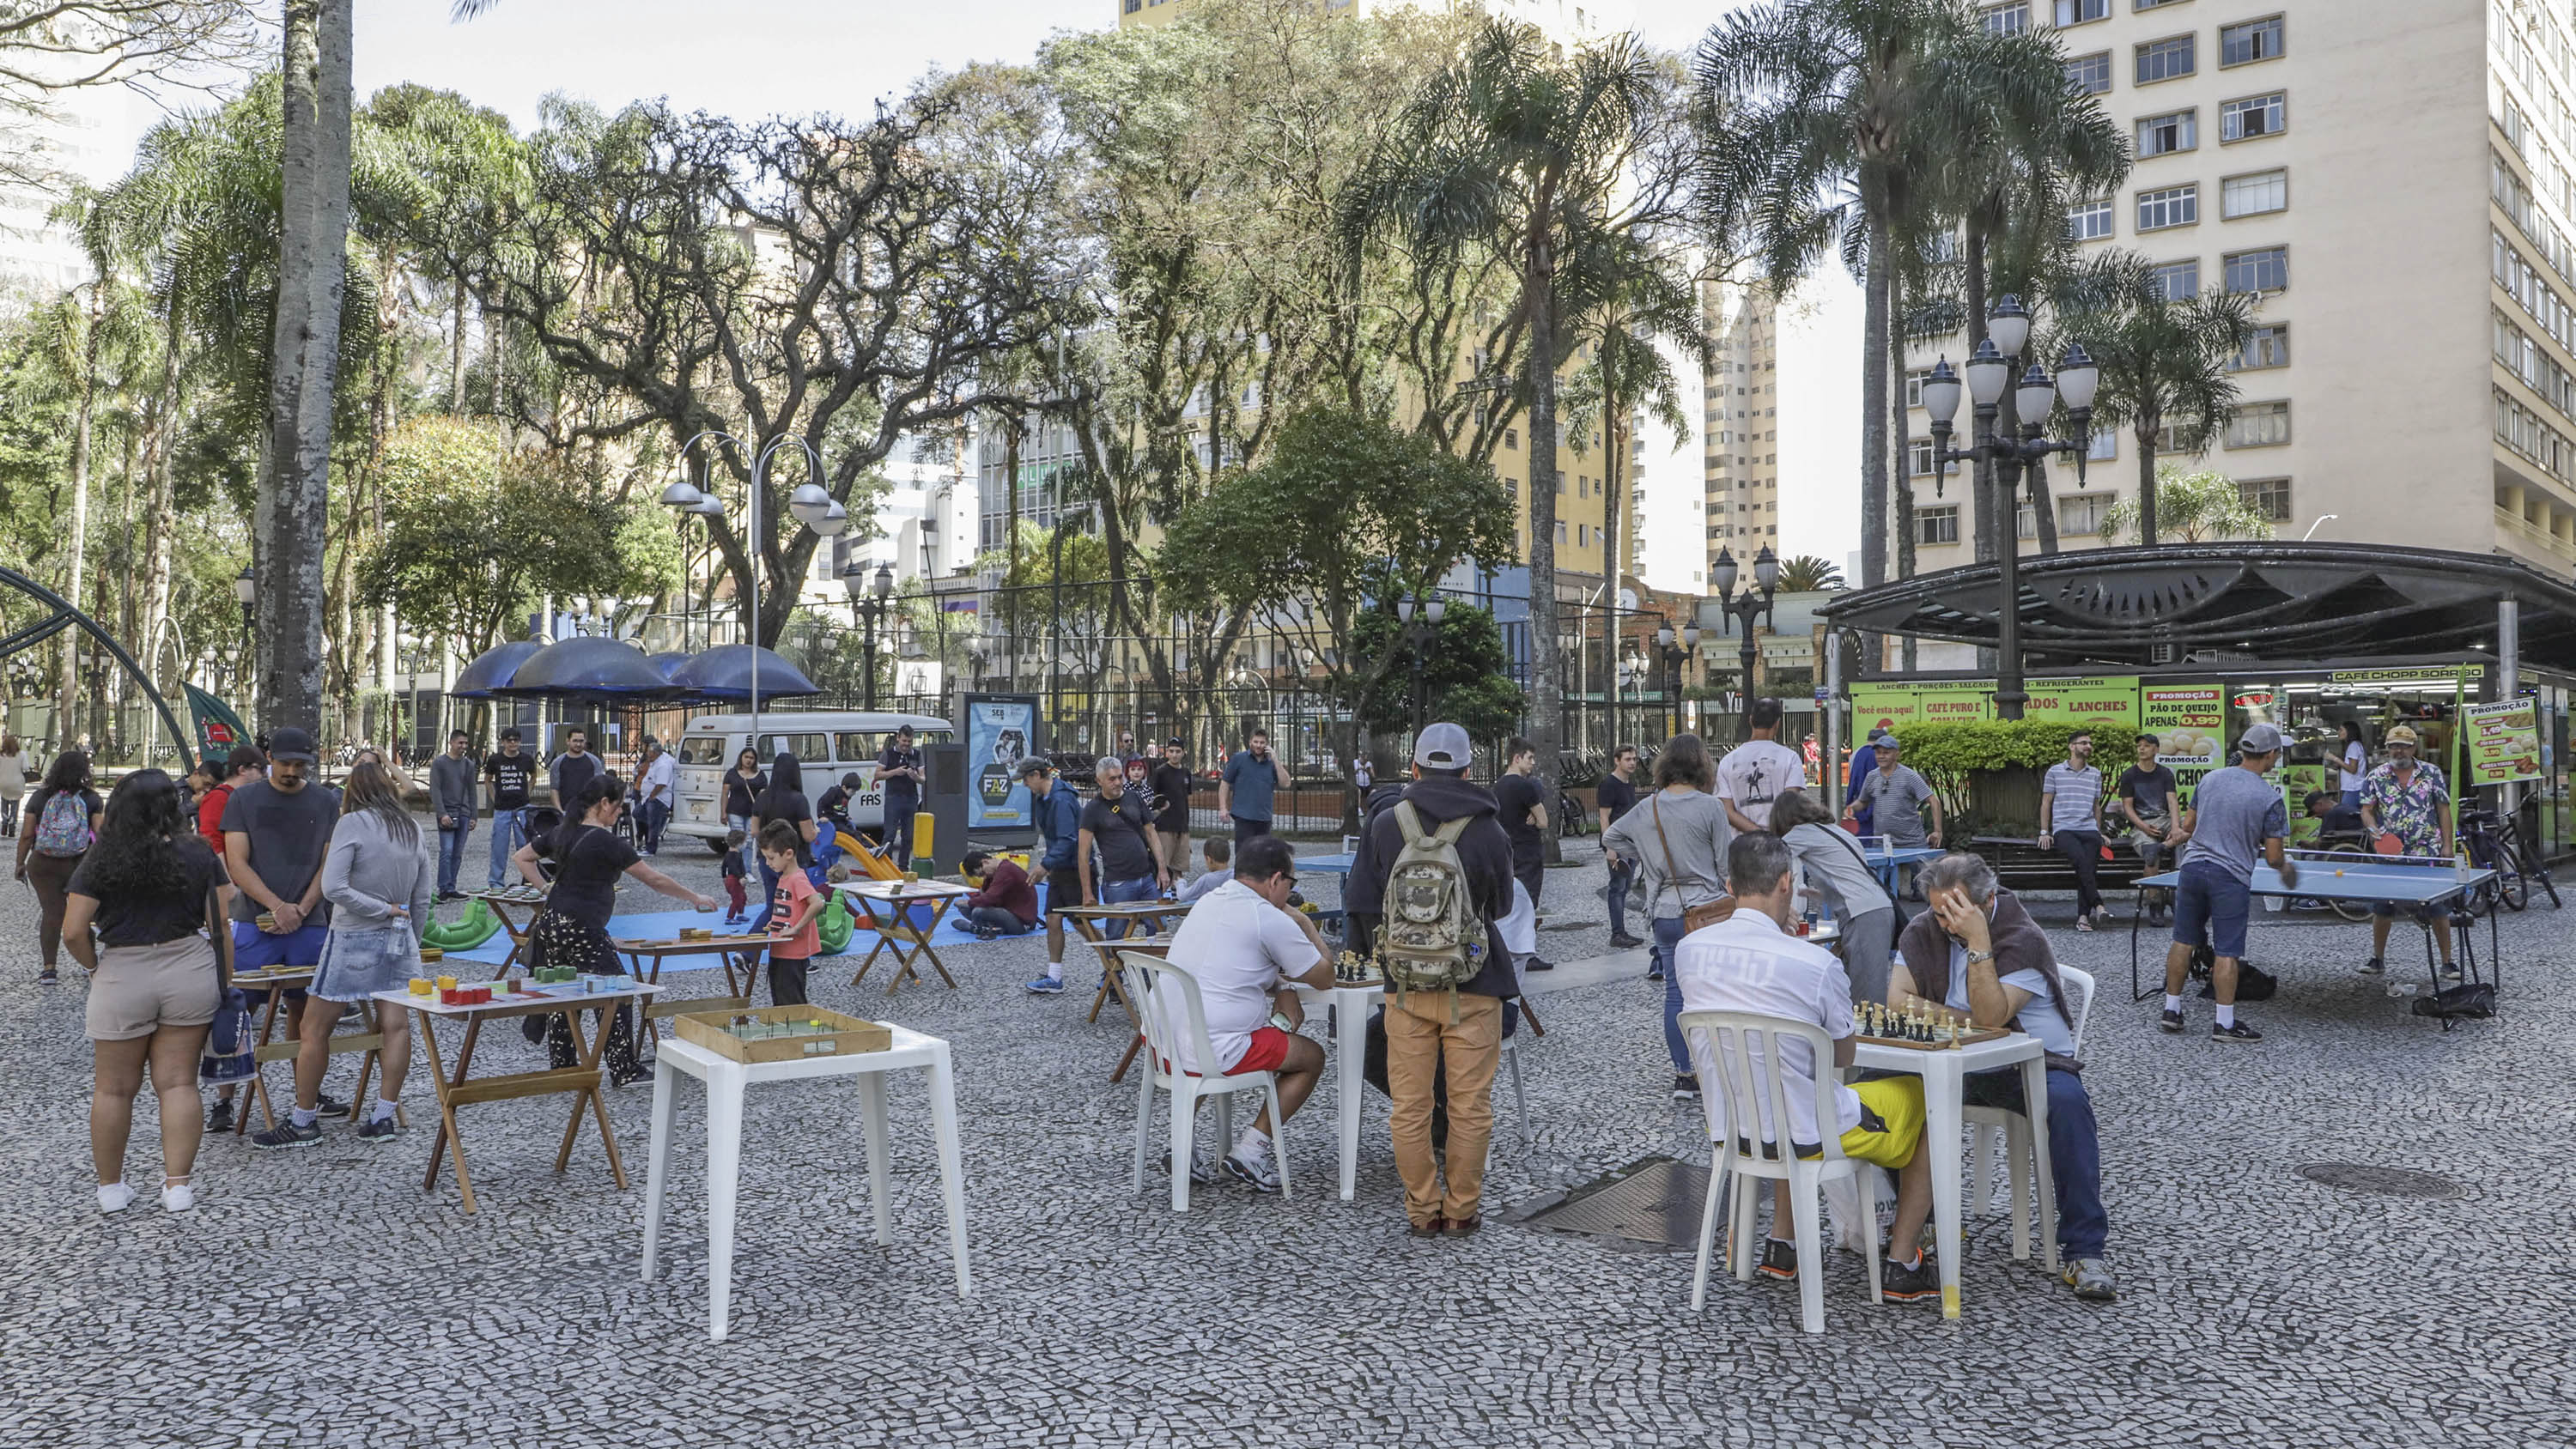 WTCC, corrida de rua e Festival de Escalada agitam fim de semana -  Prefeitura de Curitiba